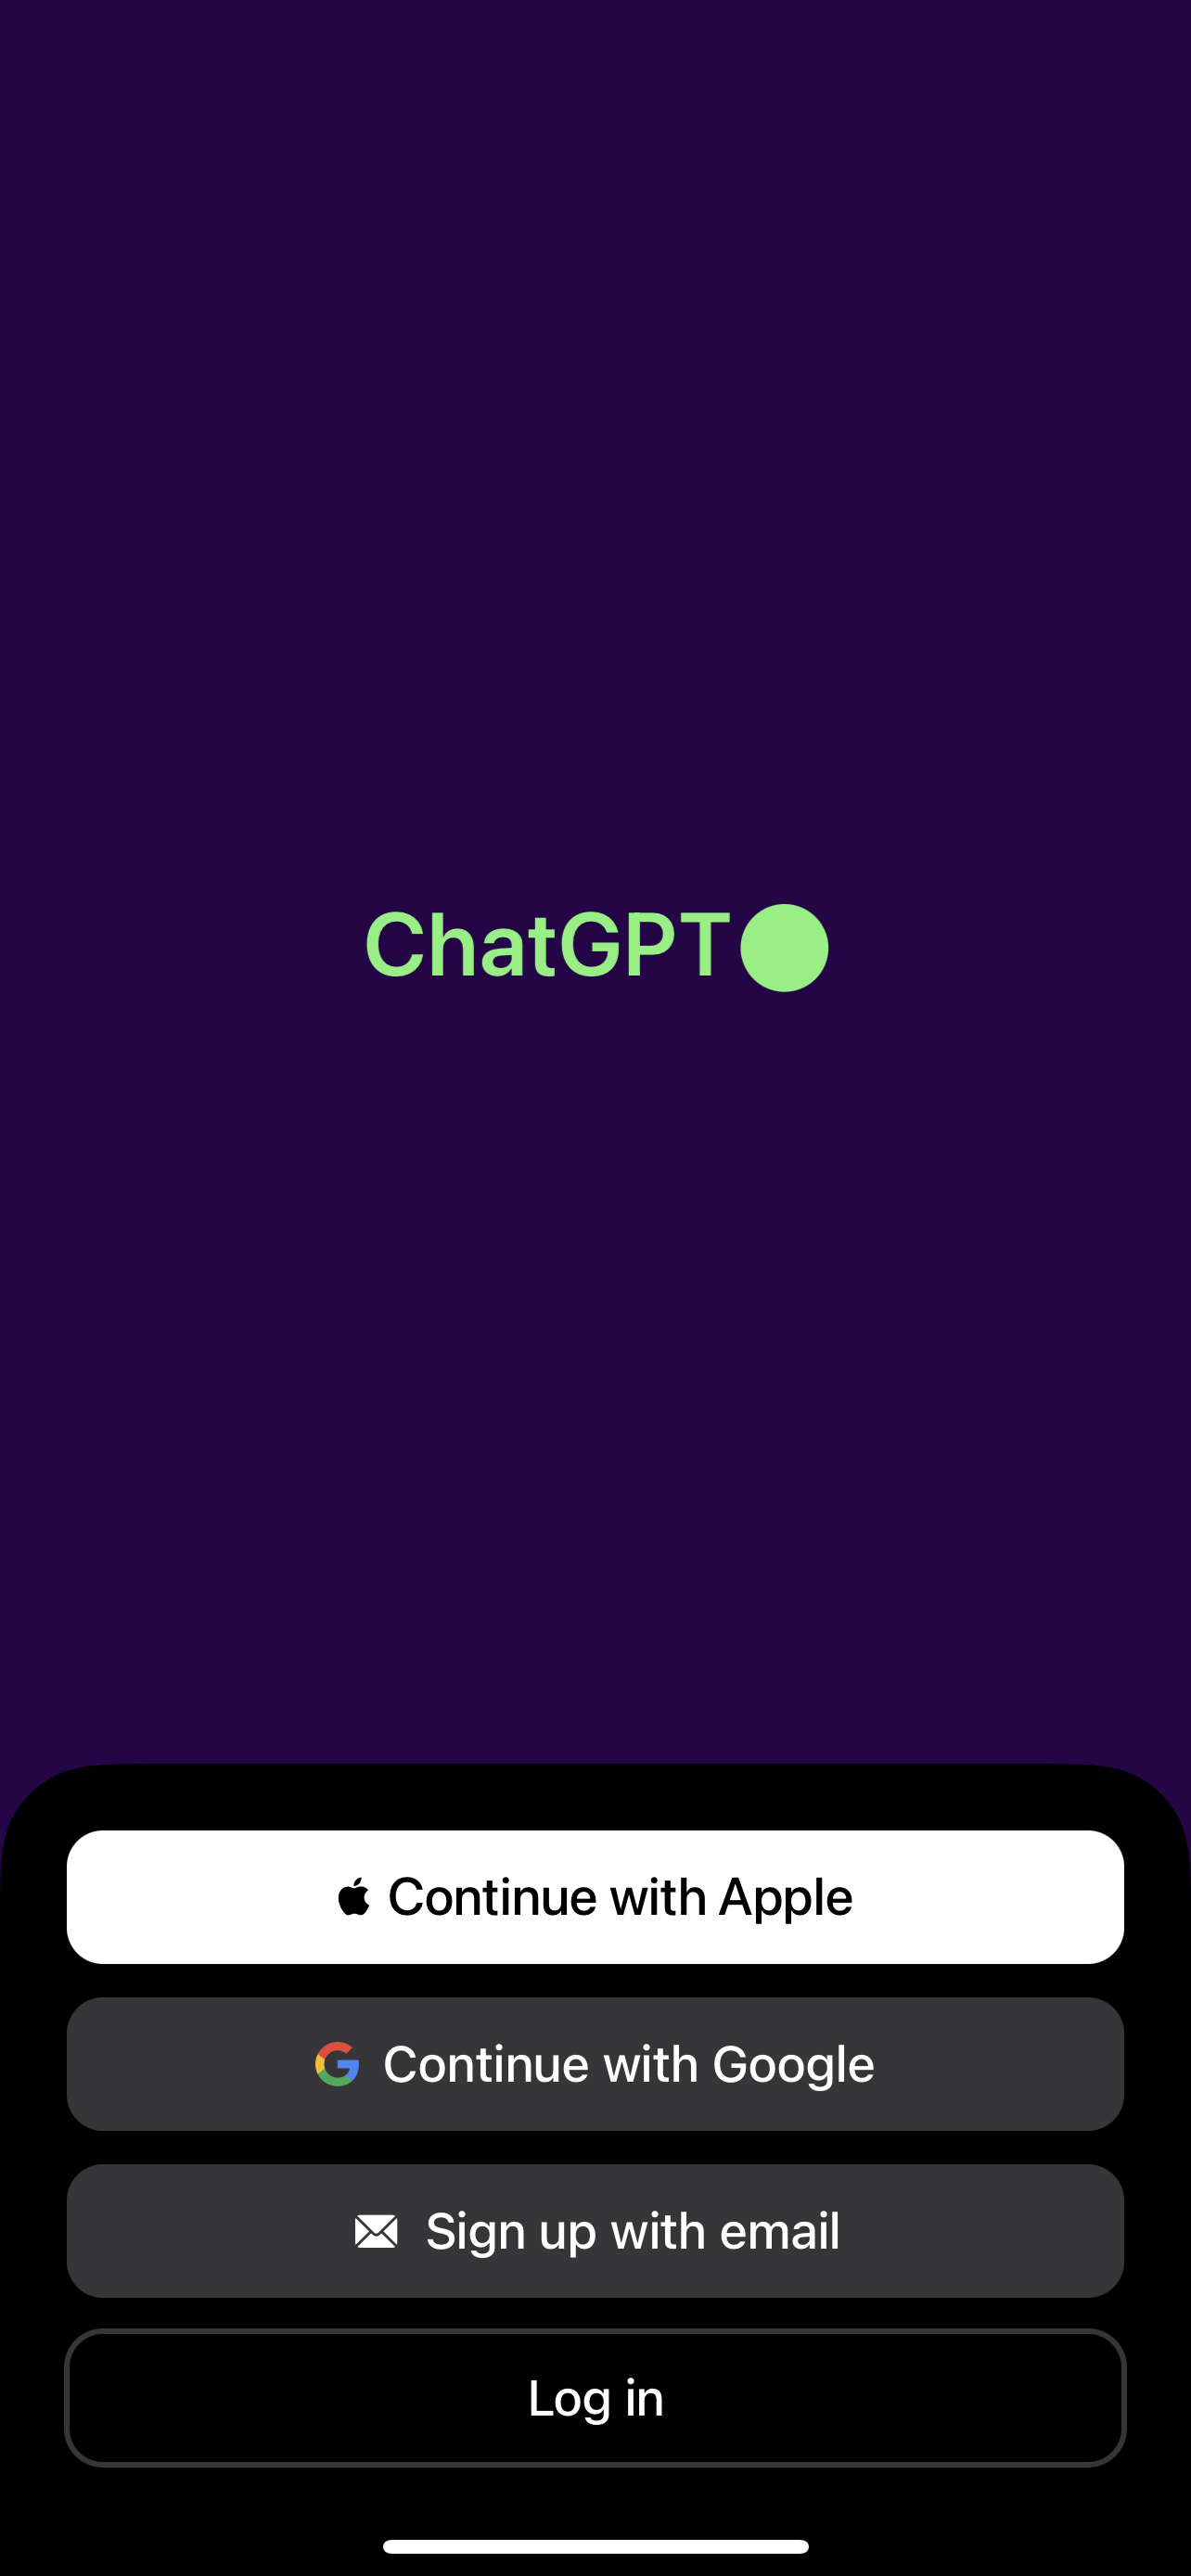 نگاهی به برنامه جدید ChatGPT آیفون از OpenAI